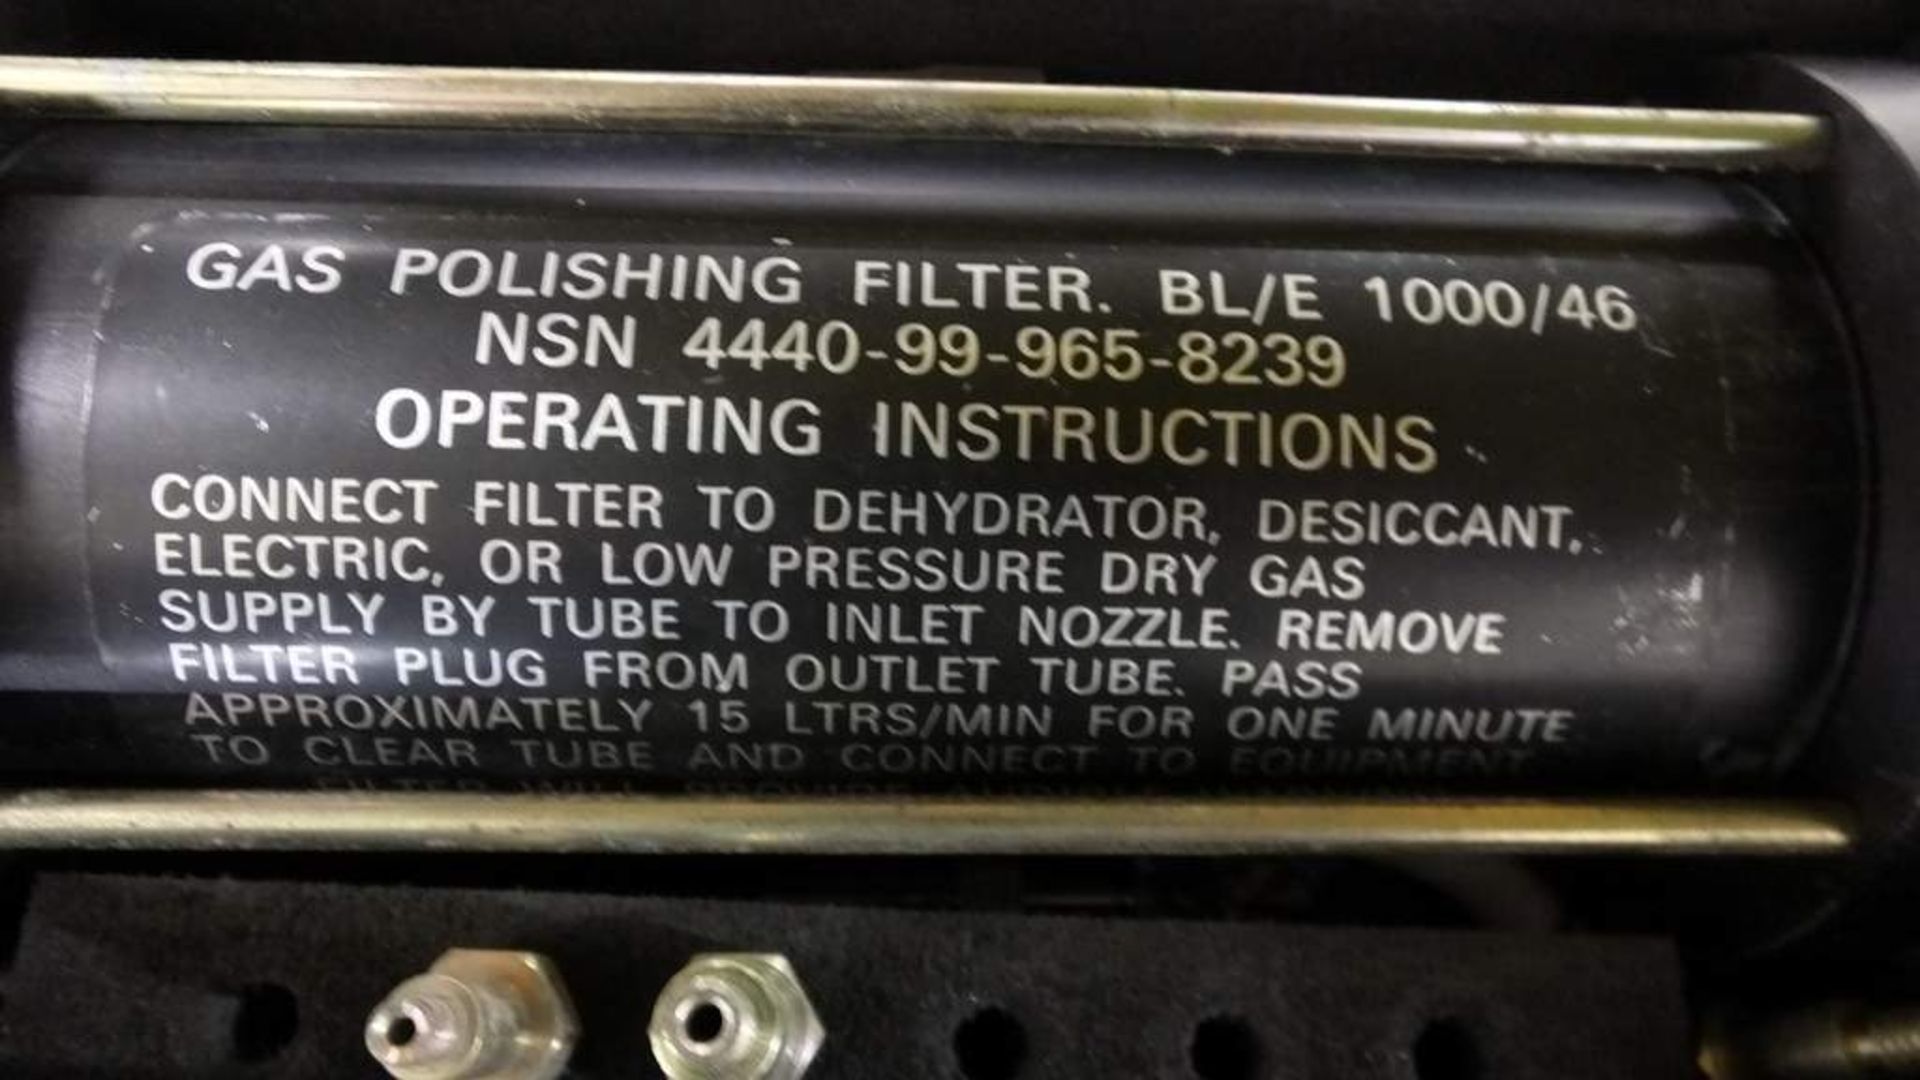 Gas polishing filter & leak detection kit - Image 3 of 6